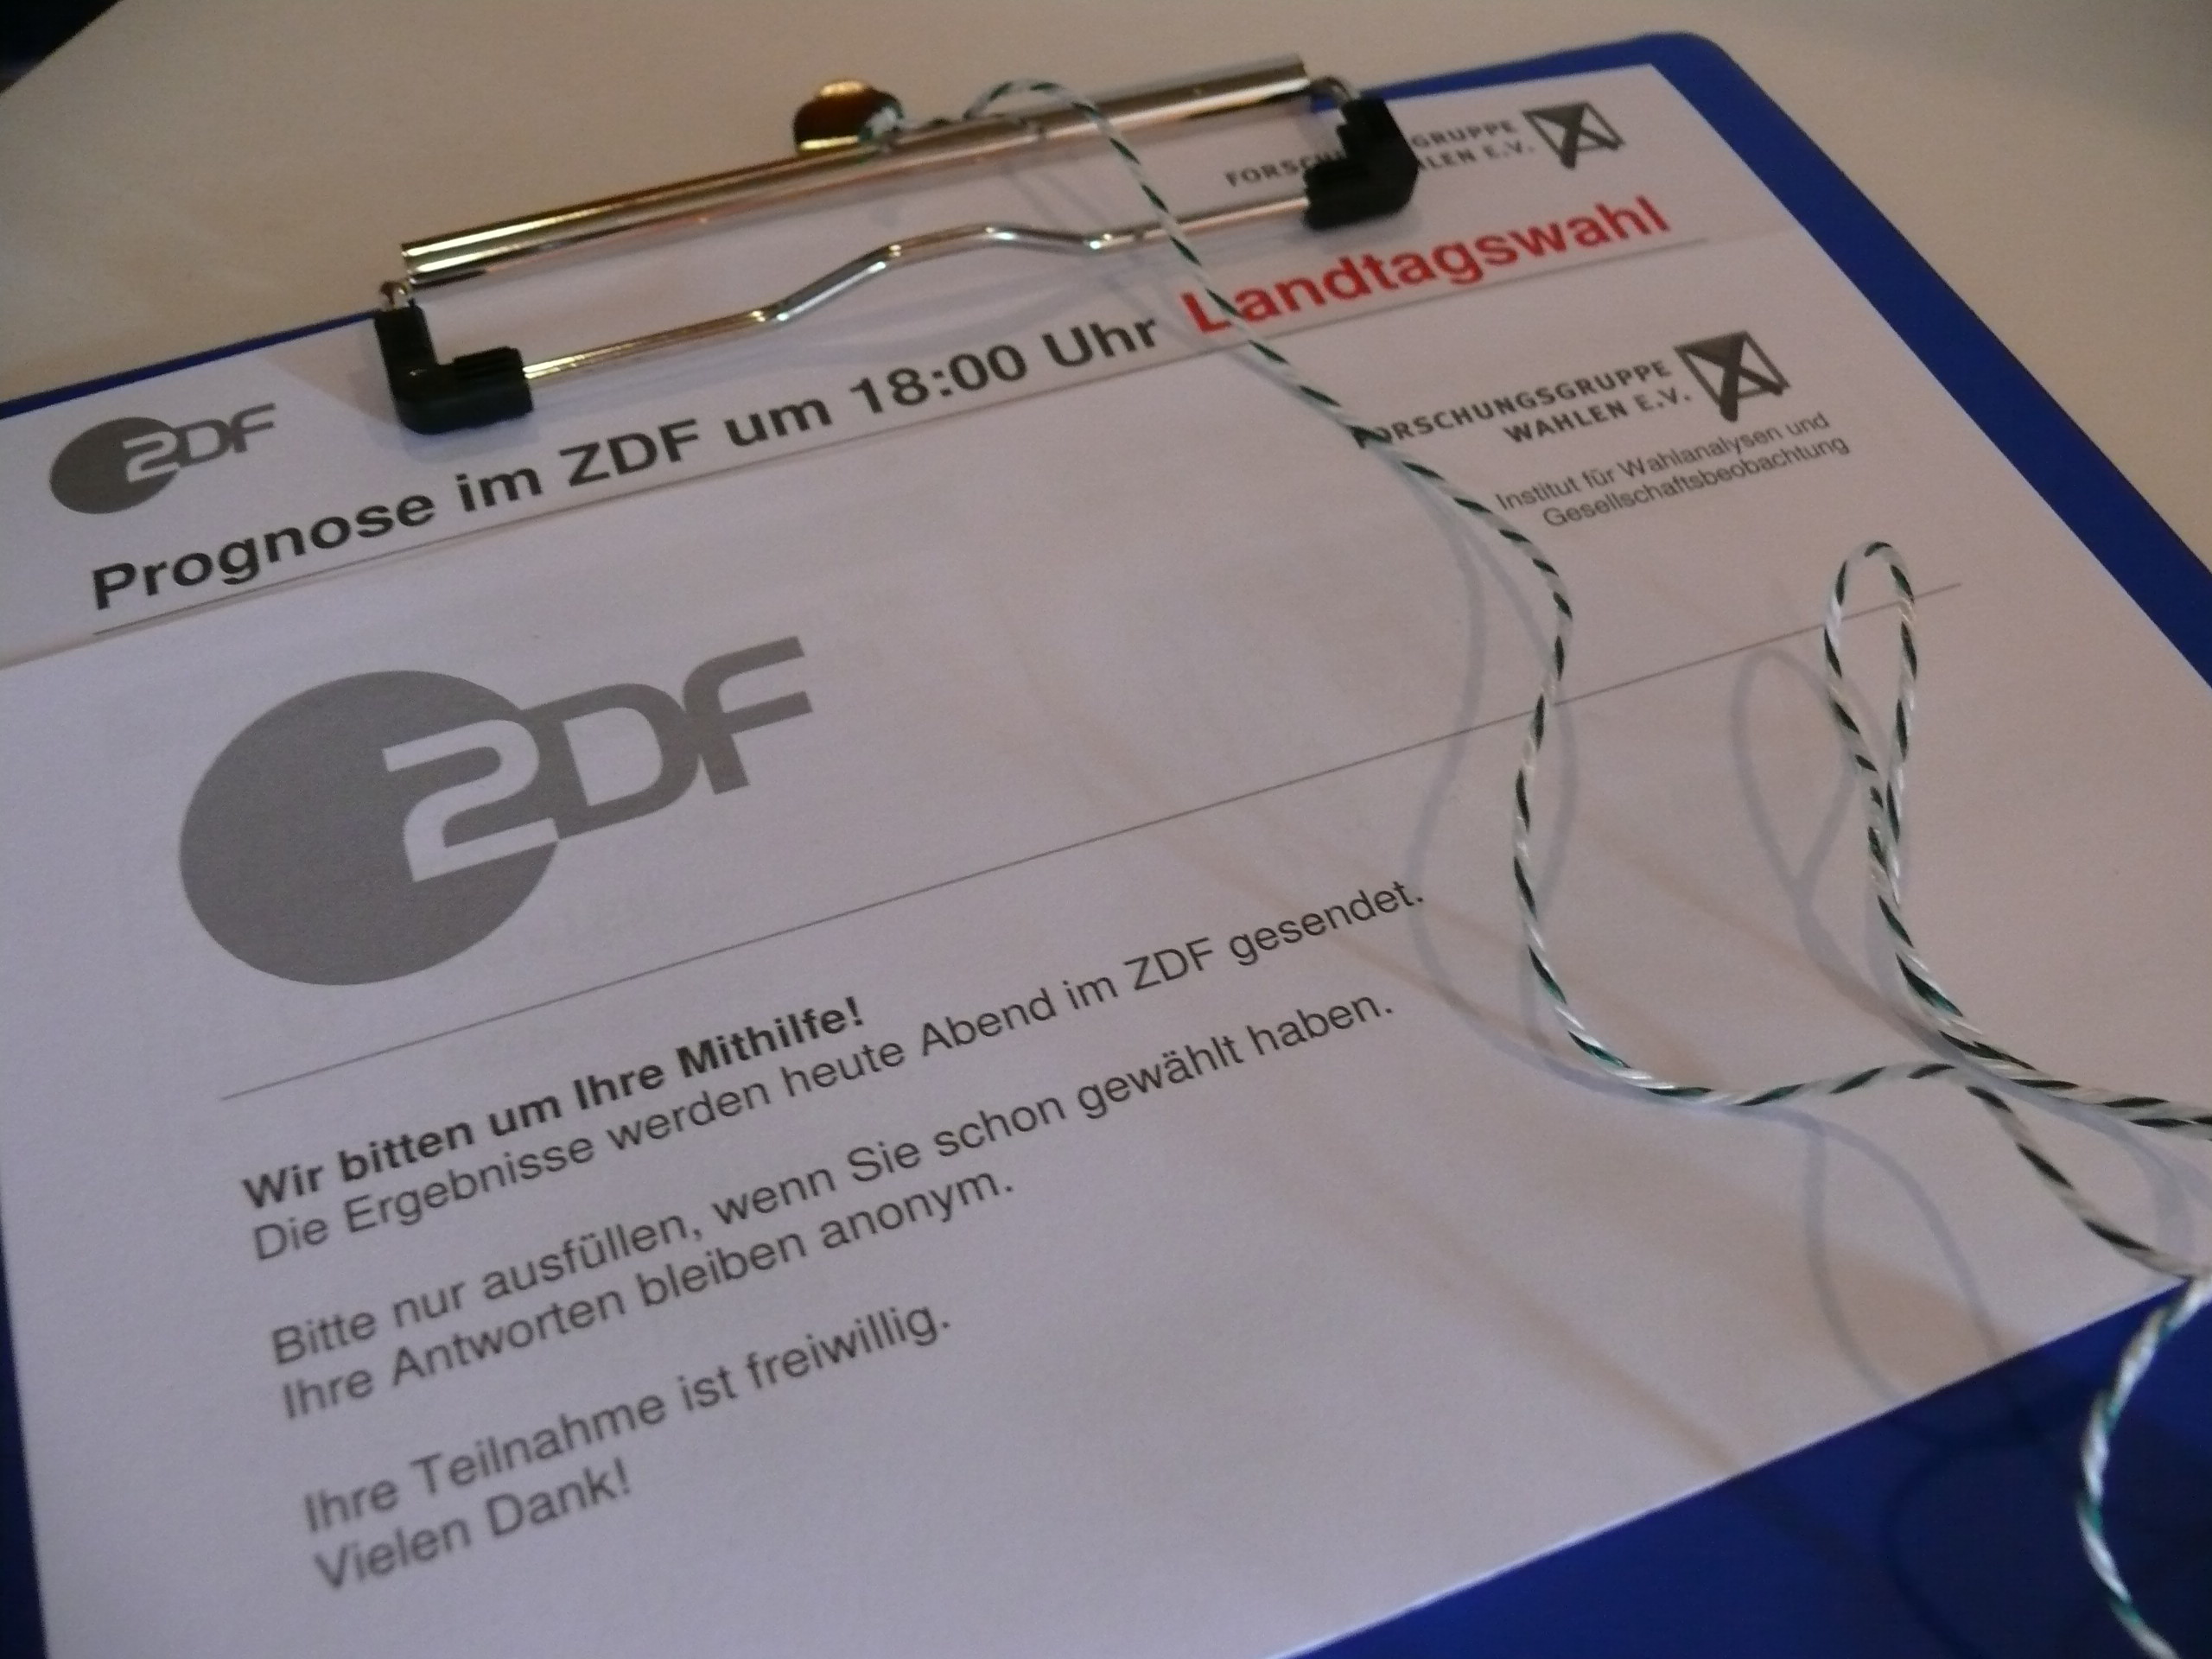 Klar zu erkennen: Umfrage für die ZDF.